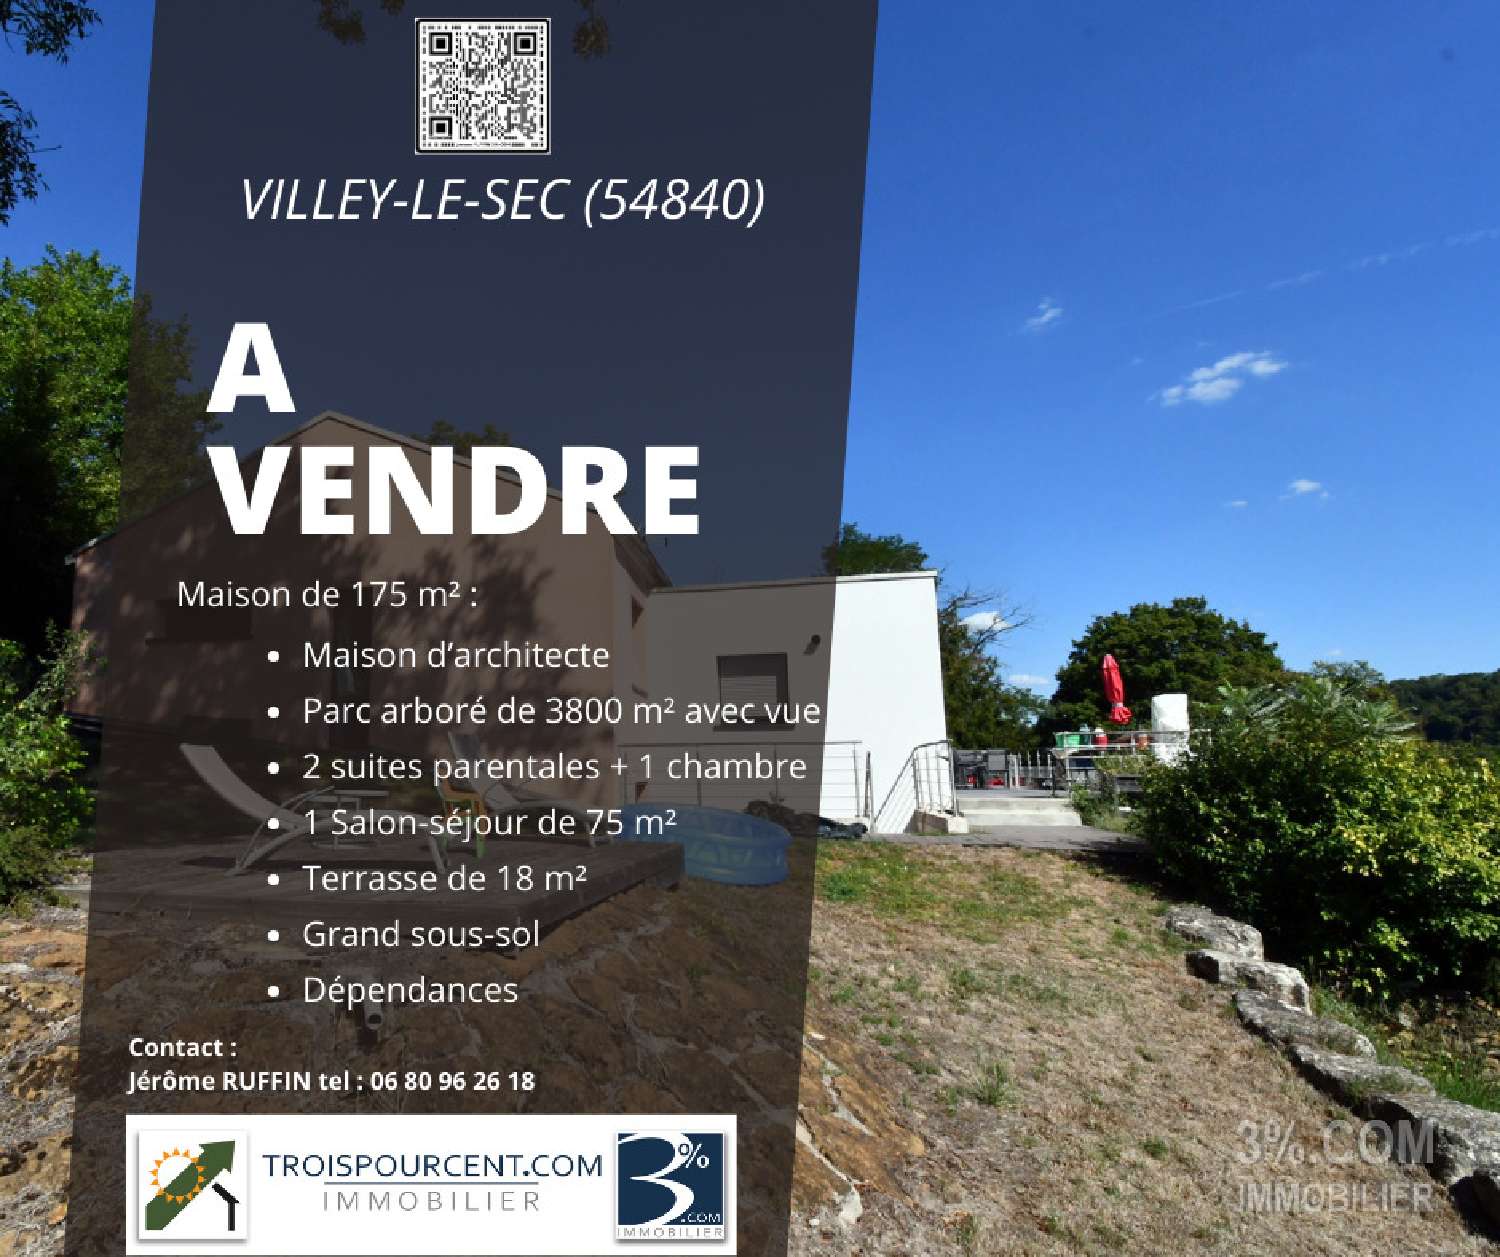  kaufen Landgut Villey-le-Sec Meurthe-et-Moselle 1